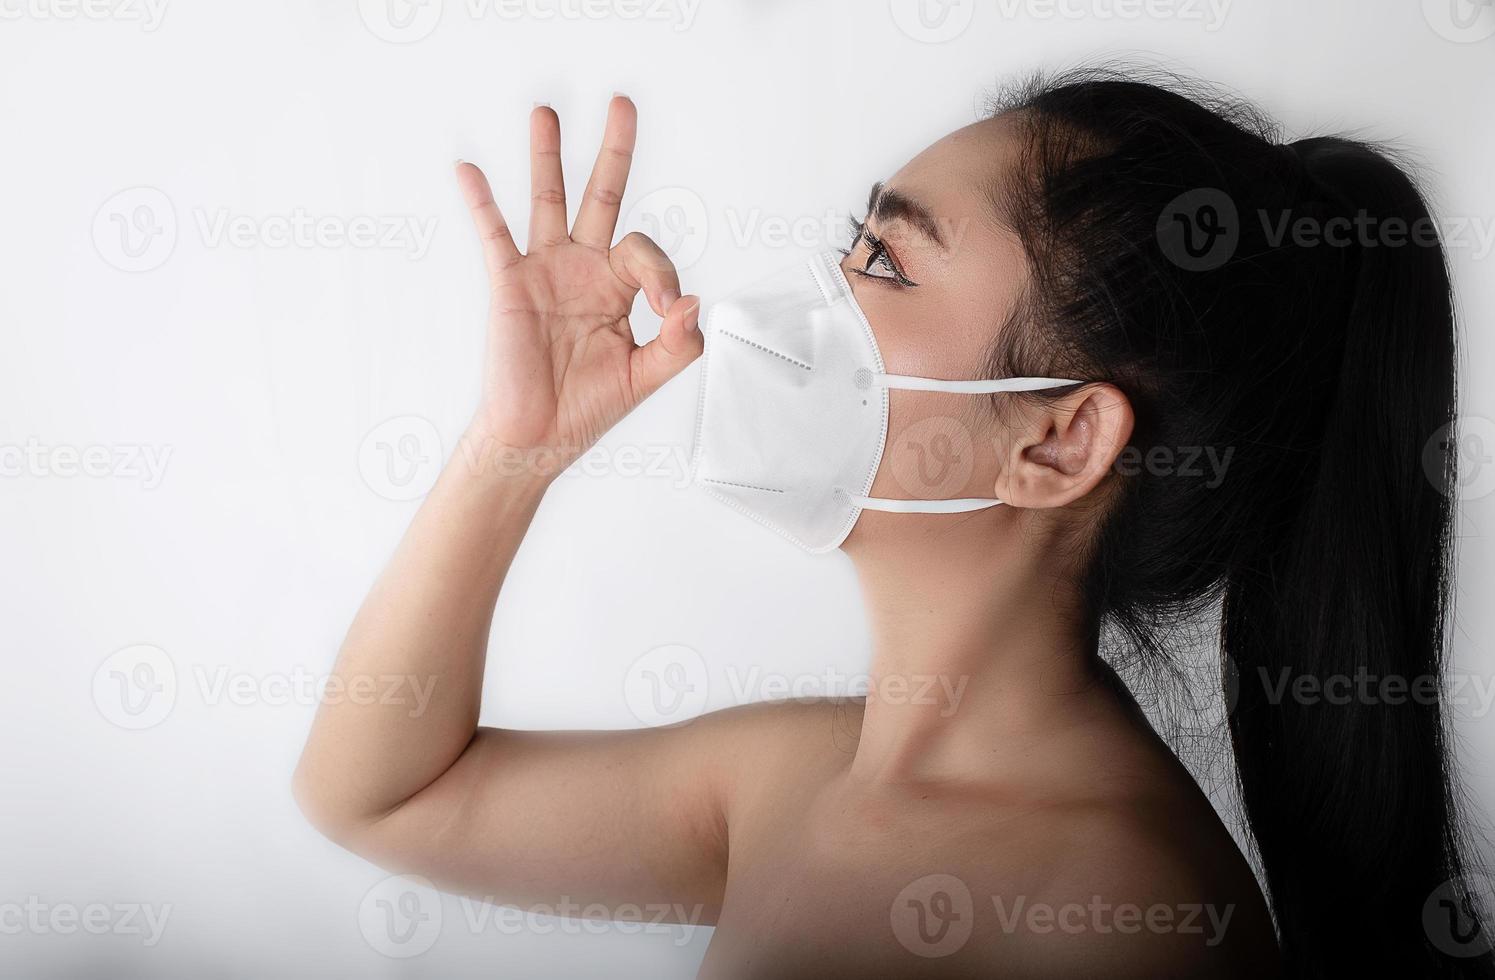 närbild av en kvinna som tar på sig en respirator n95-mask för att skydda mot luftburna luftvägssjukdomar som influensa covid-19 corona pm2.5 damm och smog foto